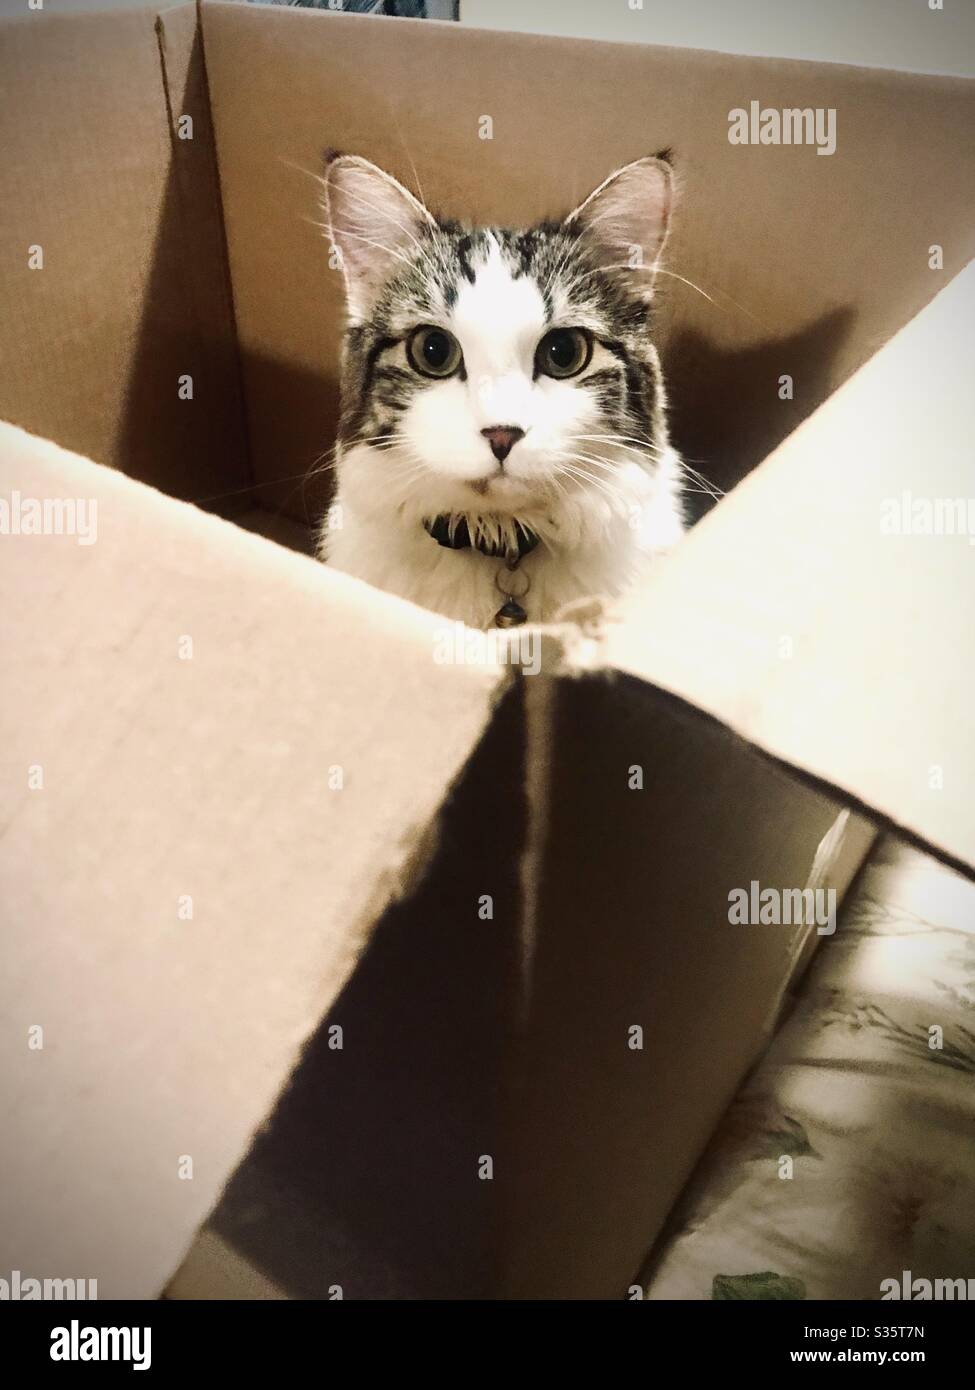 Eine Katze mit breiten Augen sitzt in einer Kiste und starrt erwartungsvoll auf ihren Besitzer. Stockfoto